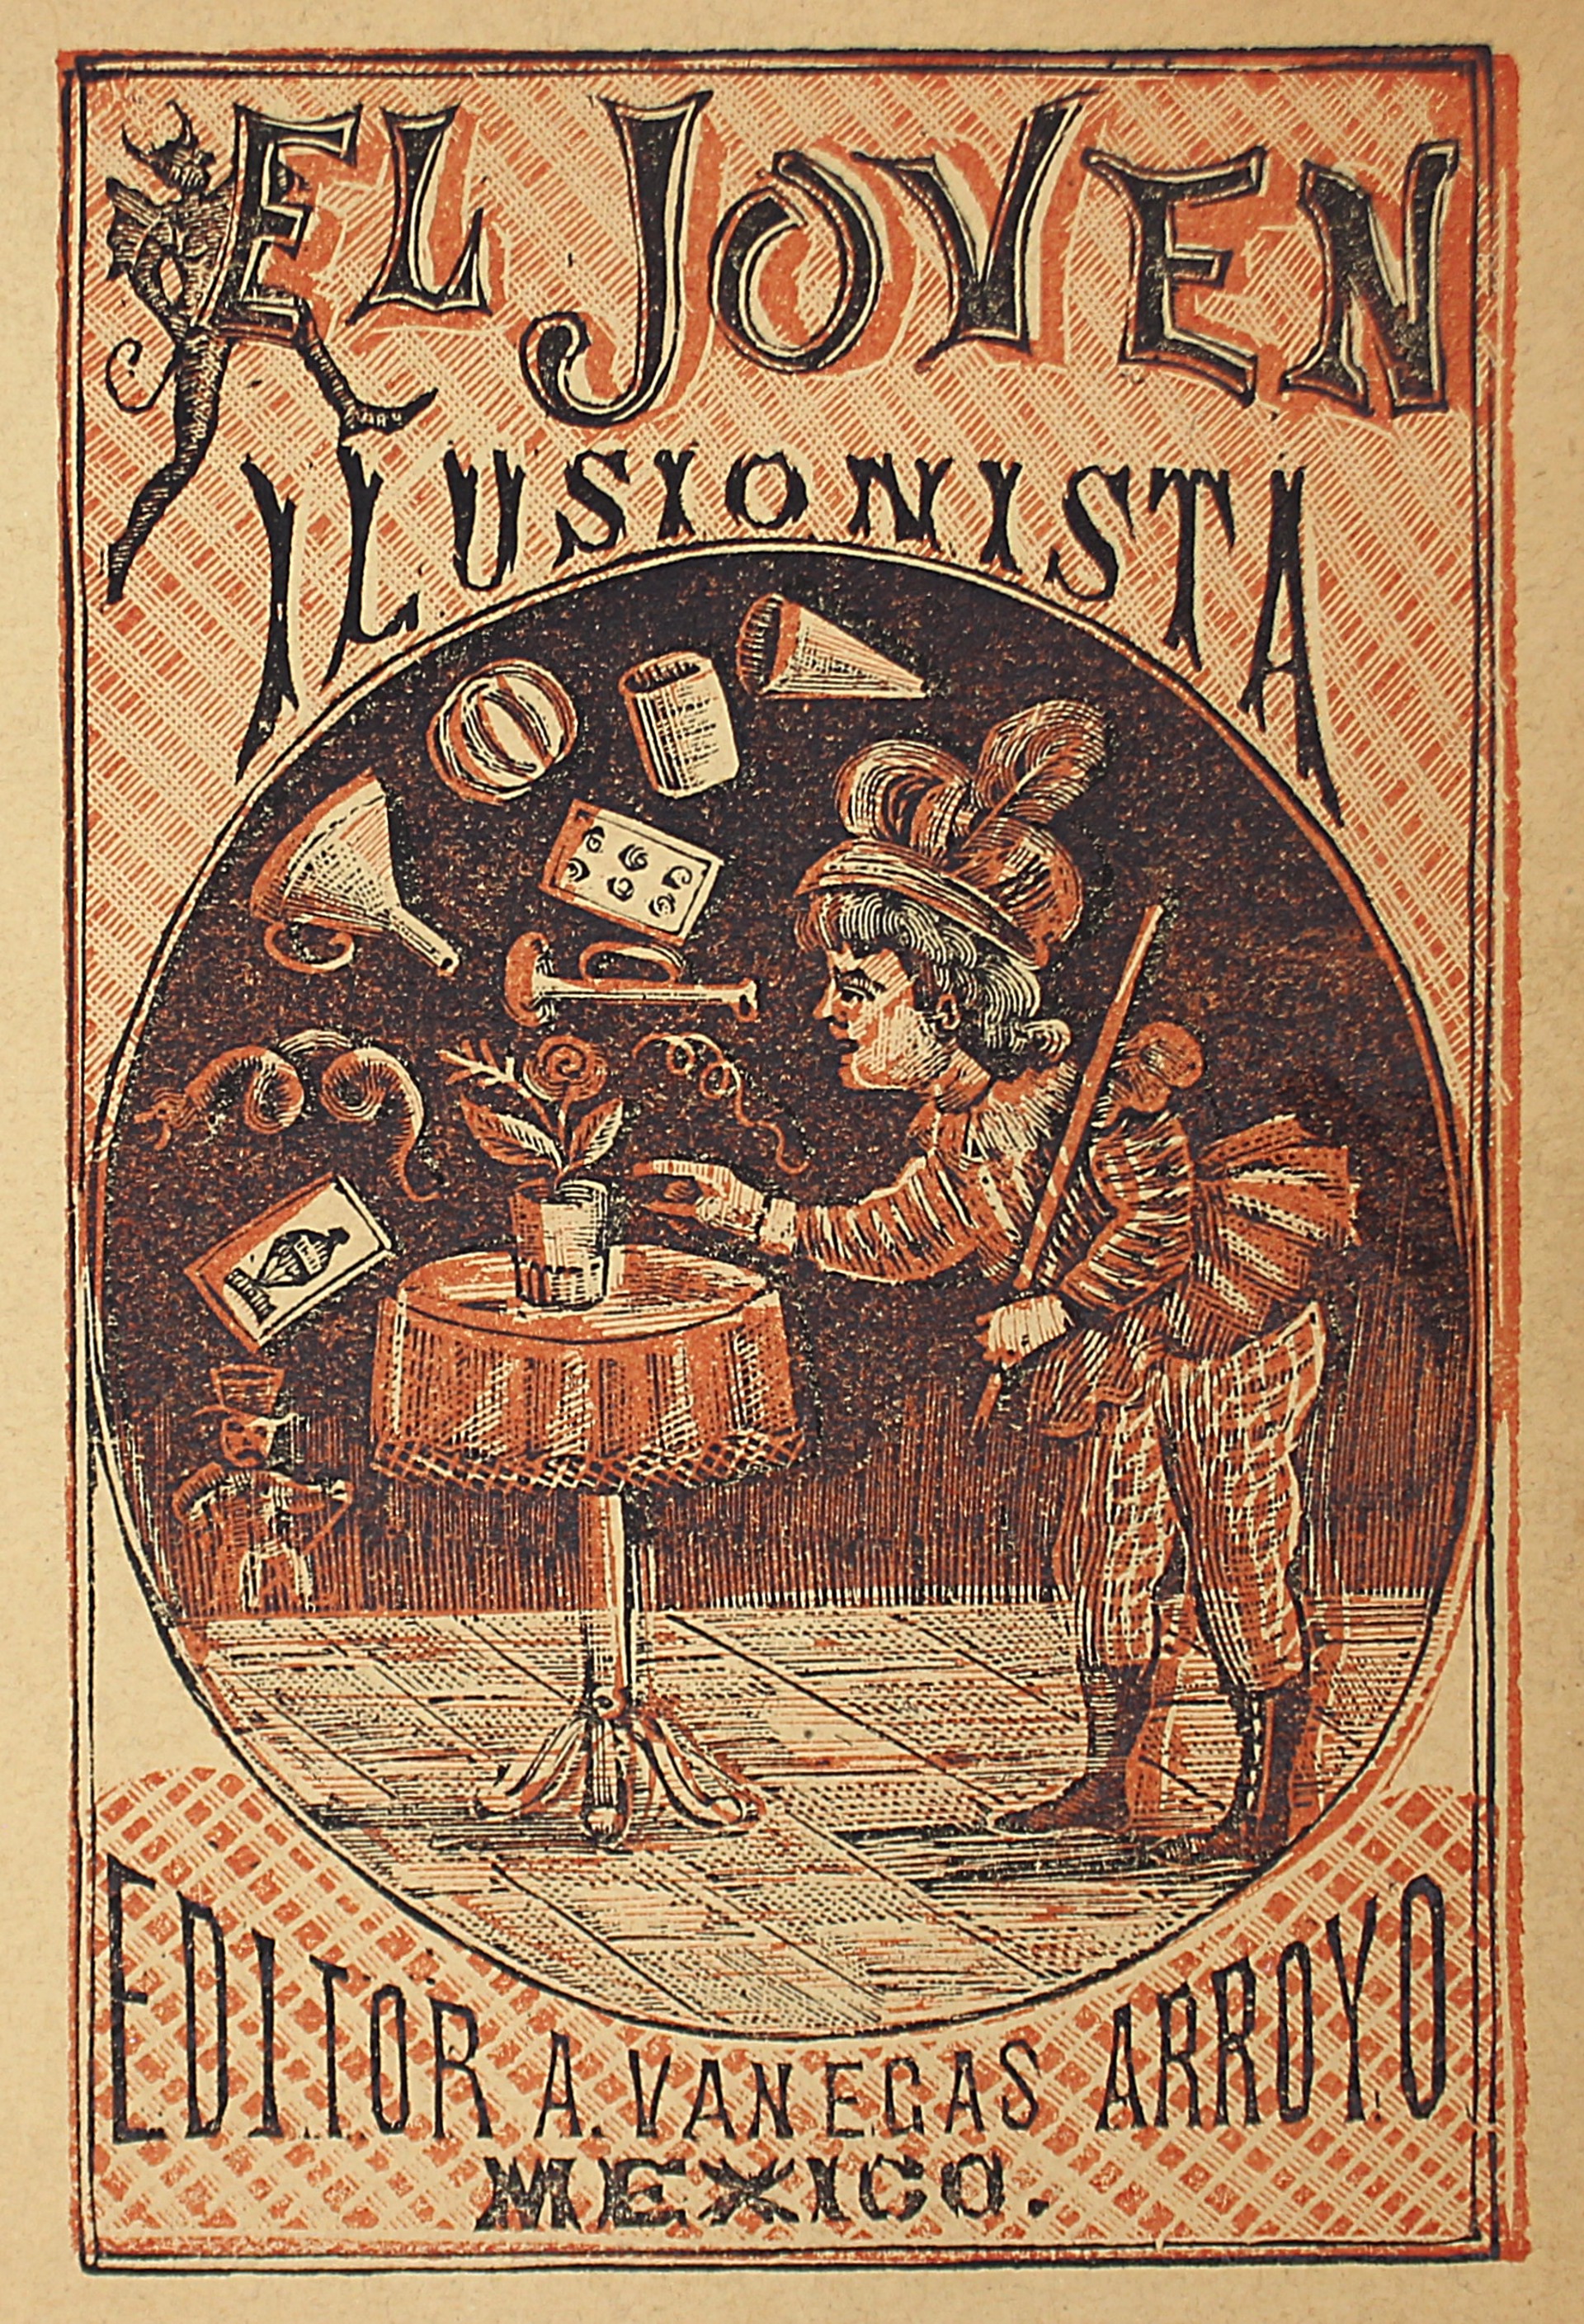 El Joven Ilusionista by Manuel Manilla